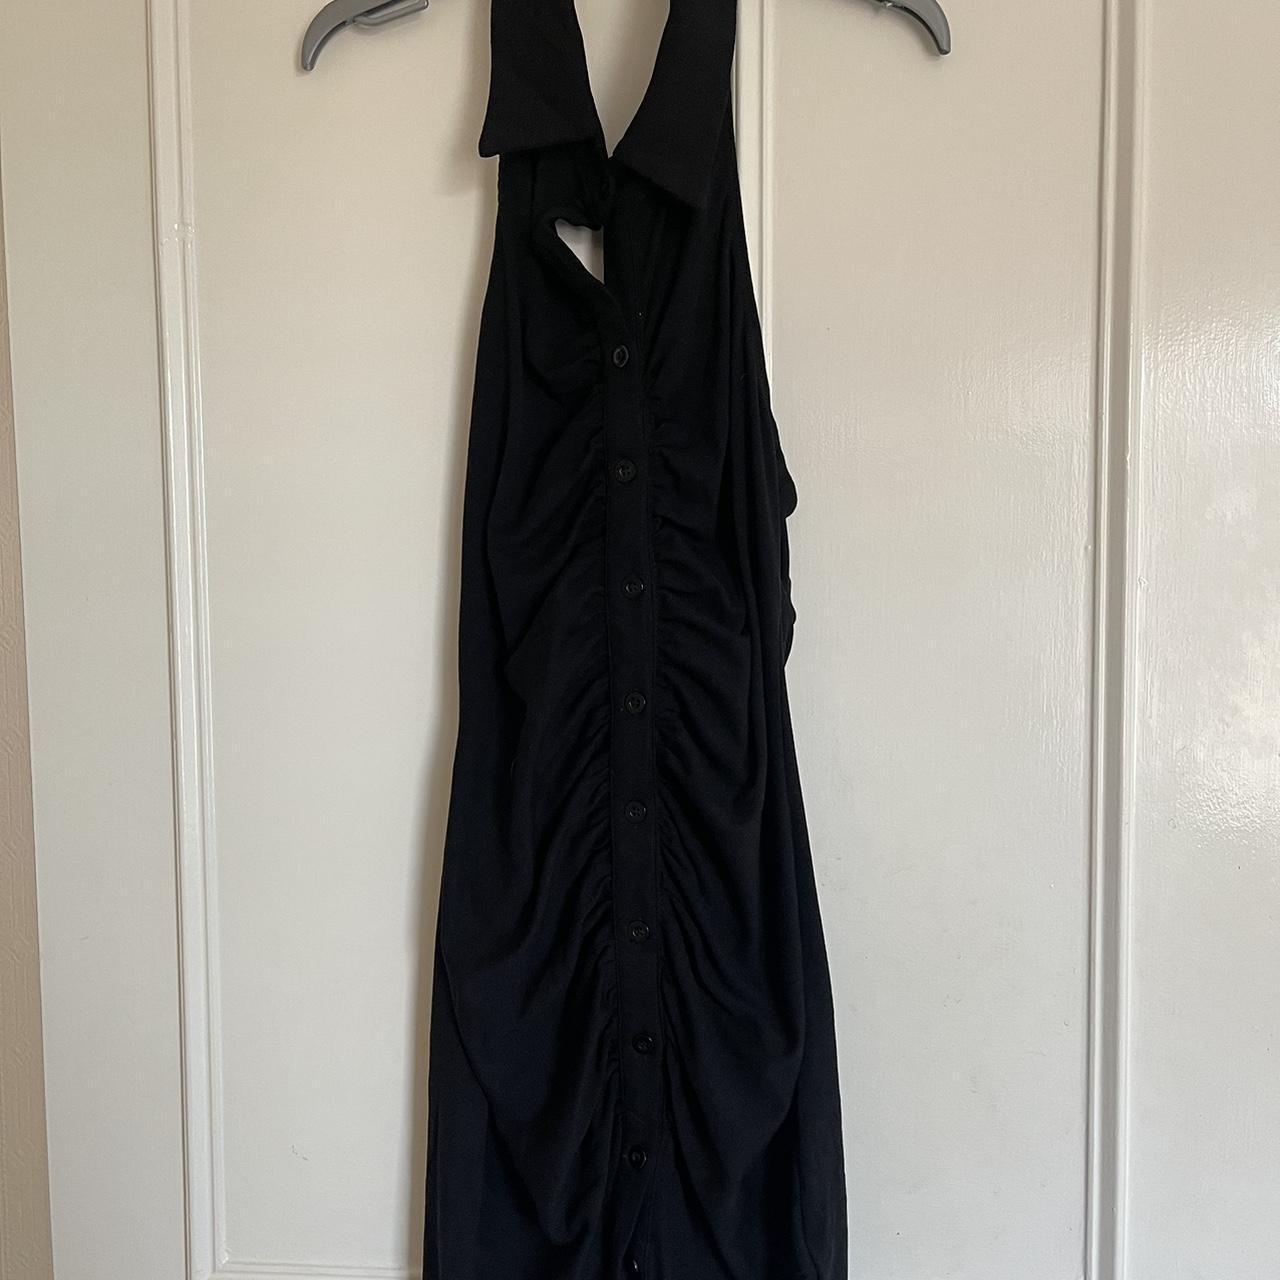 SHEIN Women's Black Dress | Depop